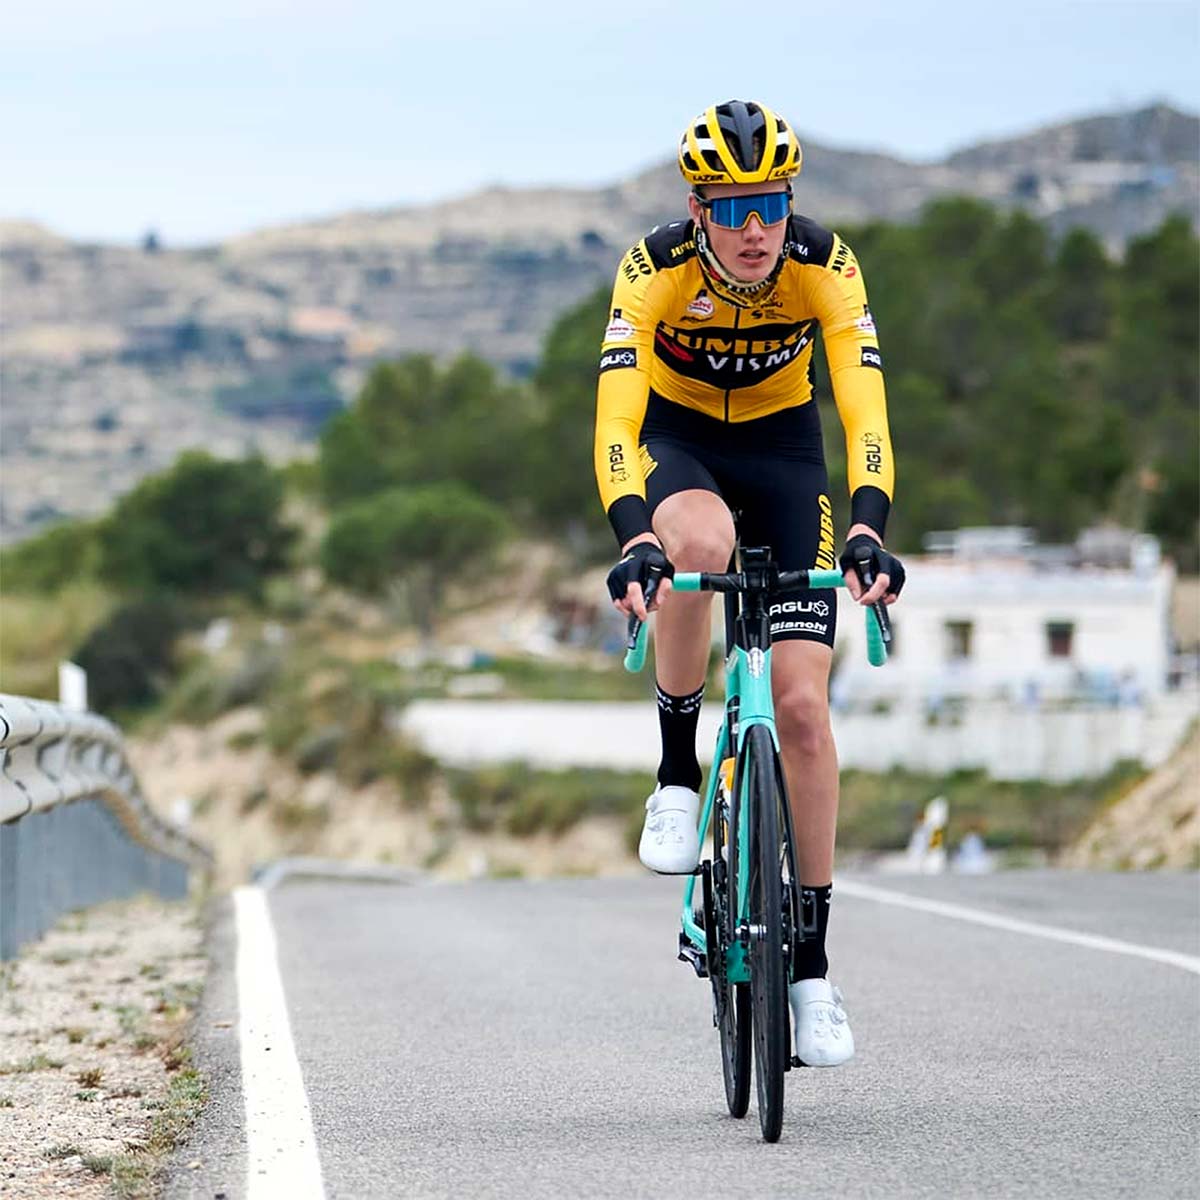 En TodoMountainBike: El ciclista Gijs Leemreize se amputa un dedo tras sufrir una caída en la primera etapa de la Vuelta a Burgos